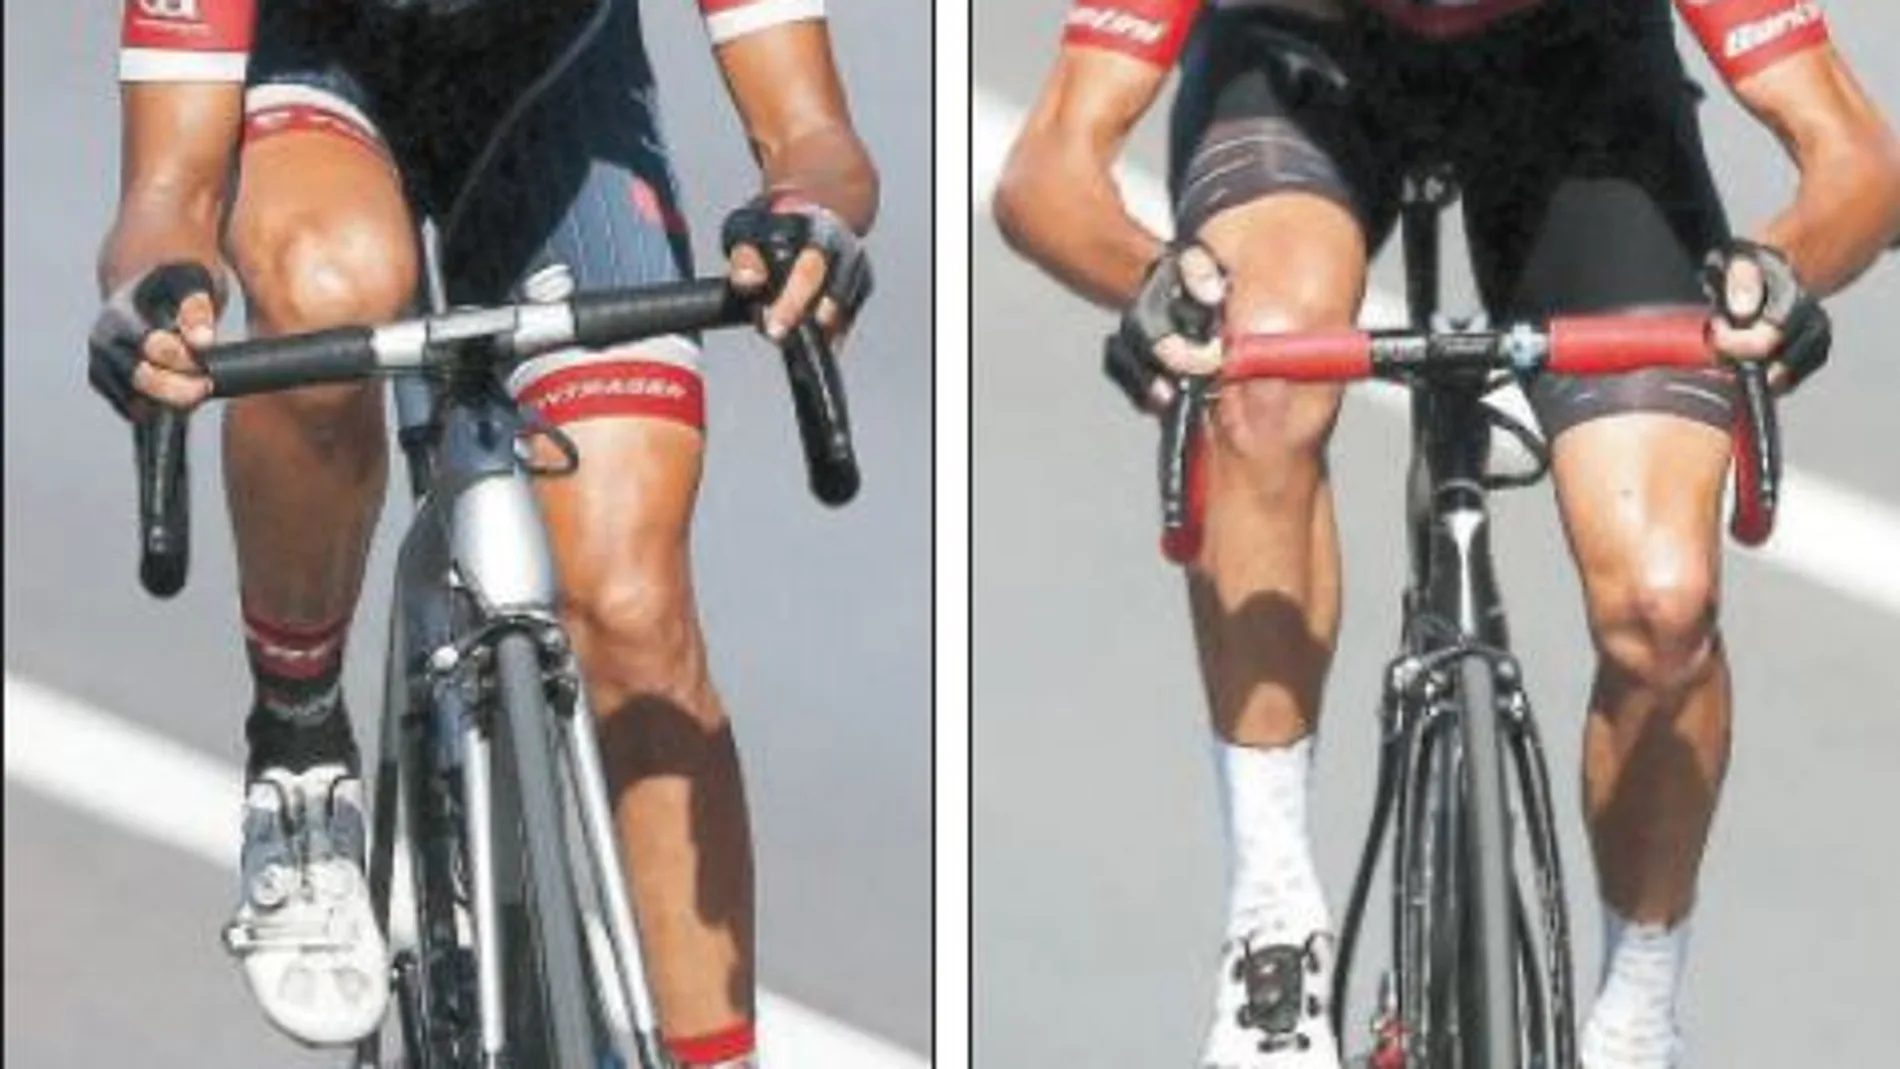 Contador consiguió recortar tiempo a los favoritos. Froome logró conservar el maillot rojo a pesar de sus dos caídas camino de Antequera